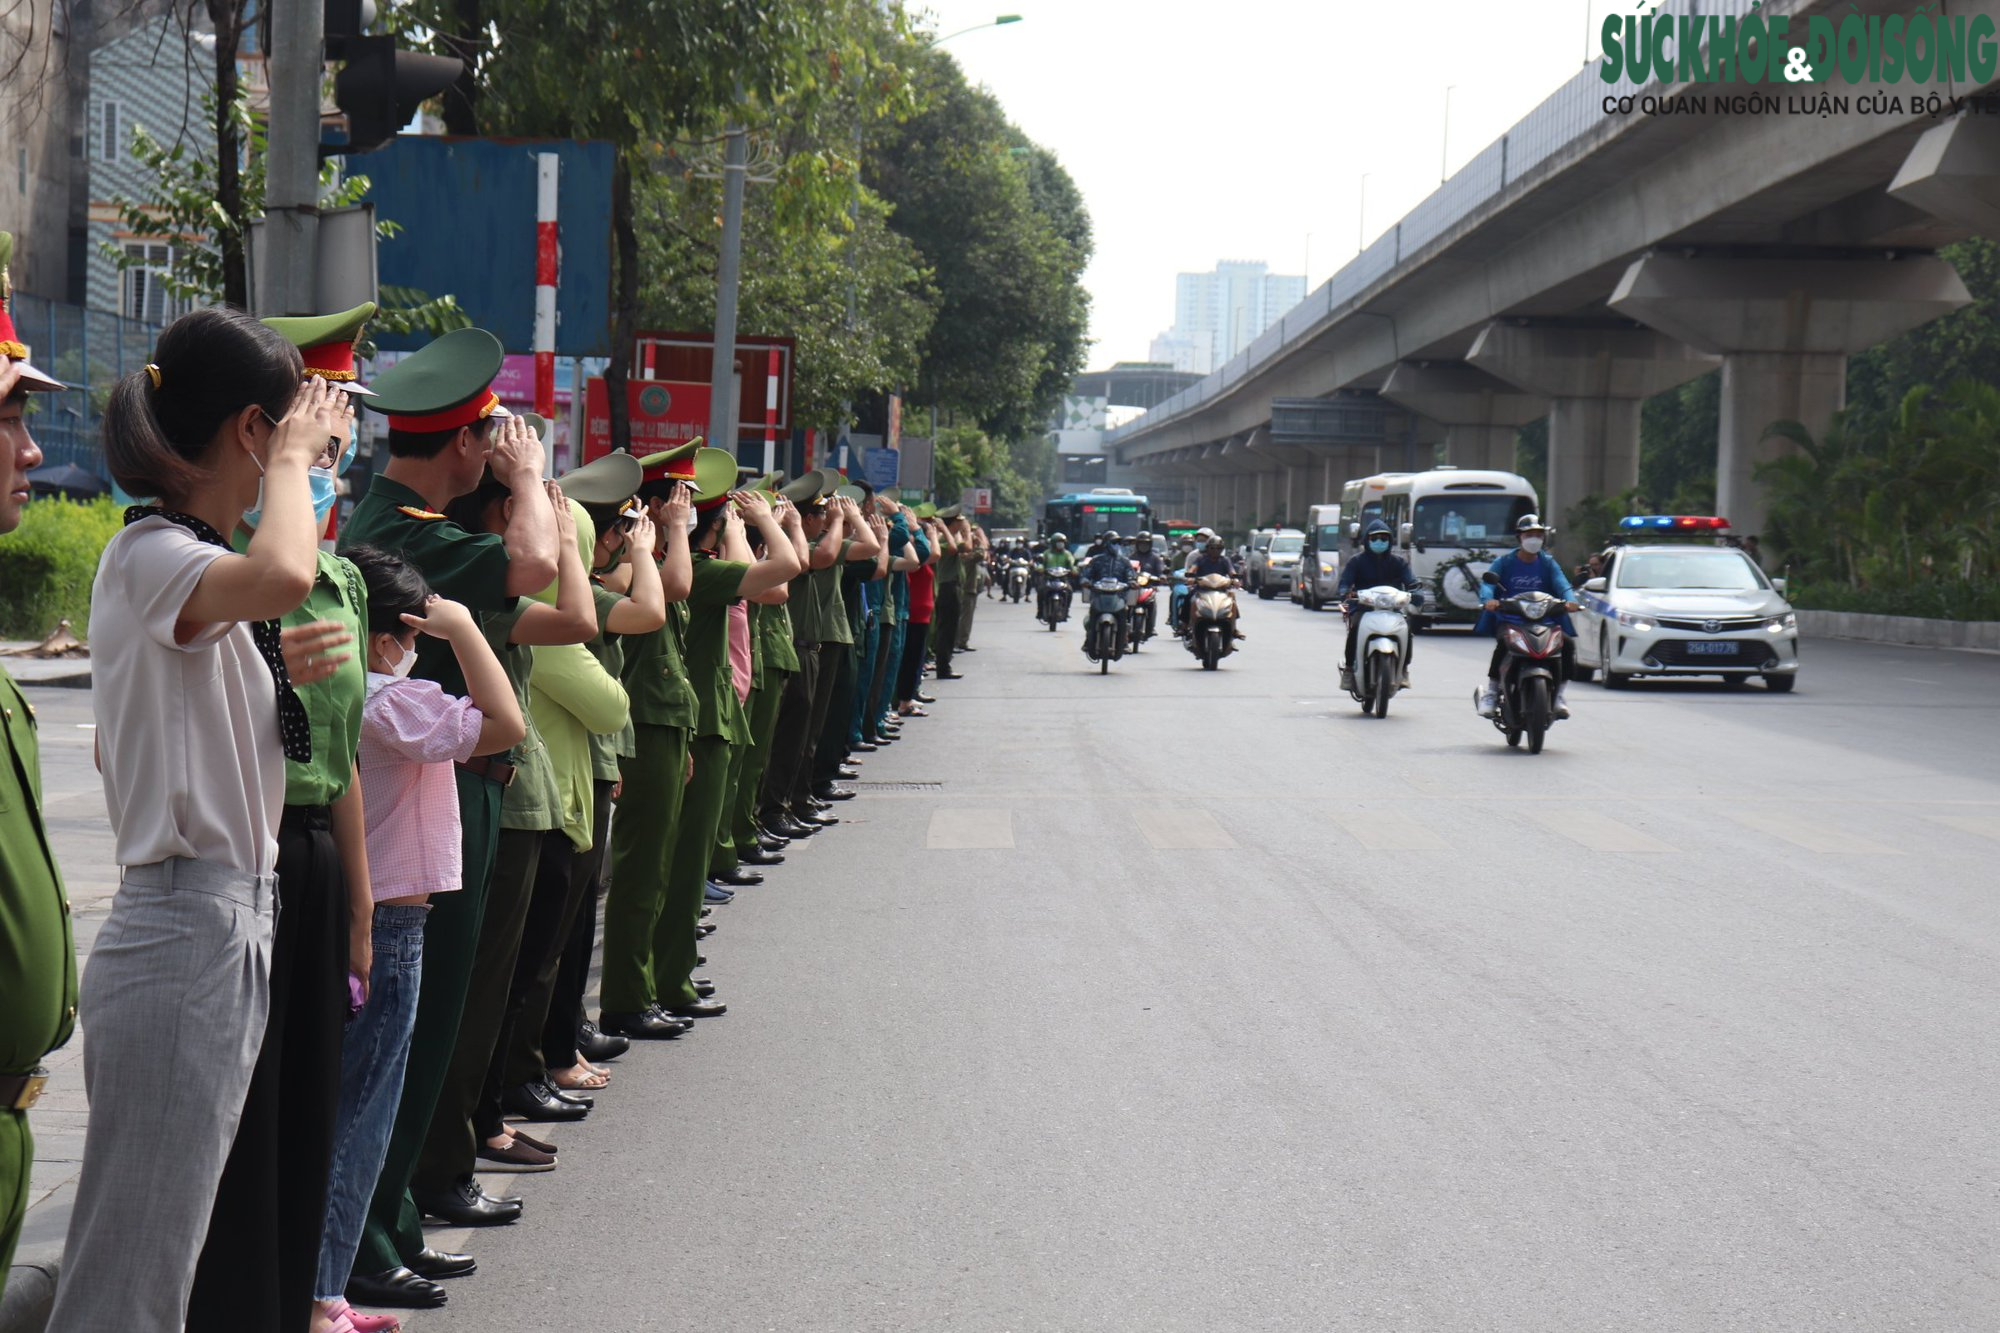 Đồng đội, người dân chào tiễn biệt 3 chiến sĩ Cảnh sát PCCC trên đường - Ảnh 8.